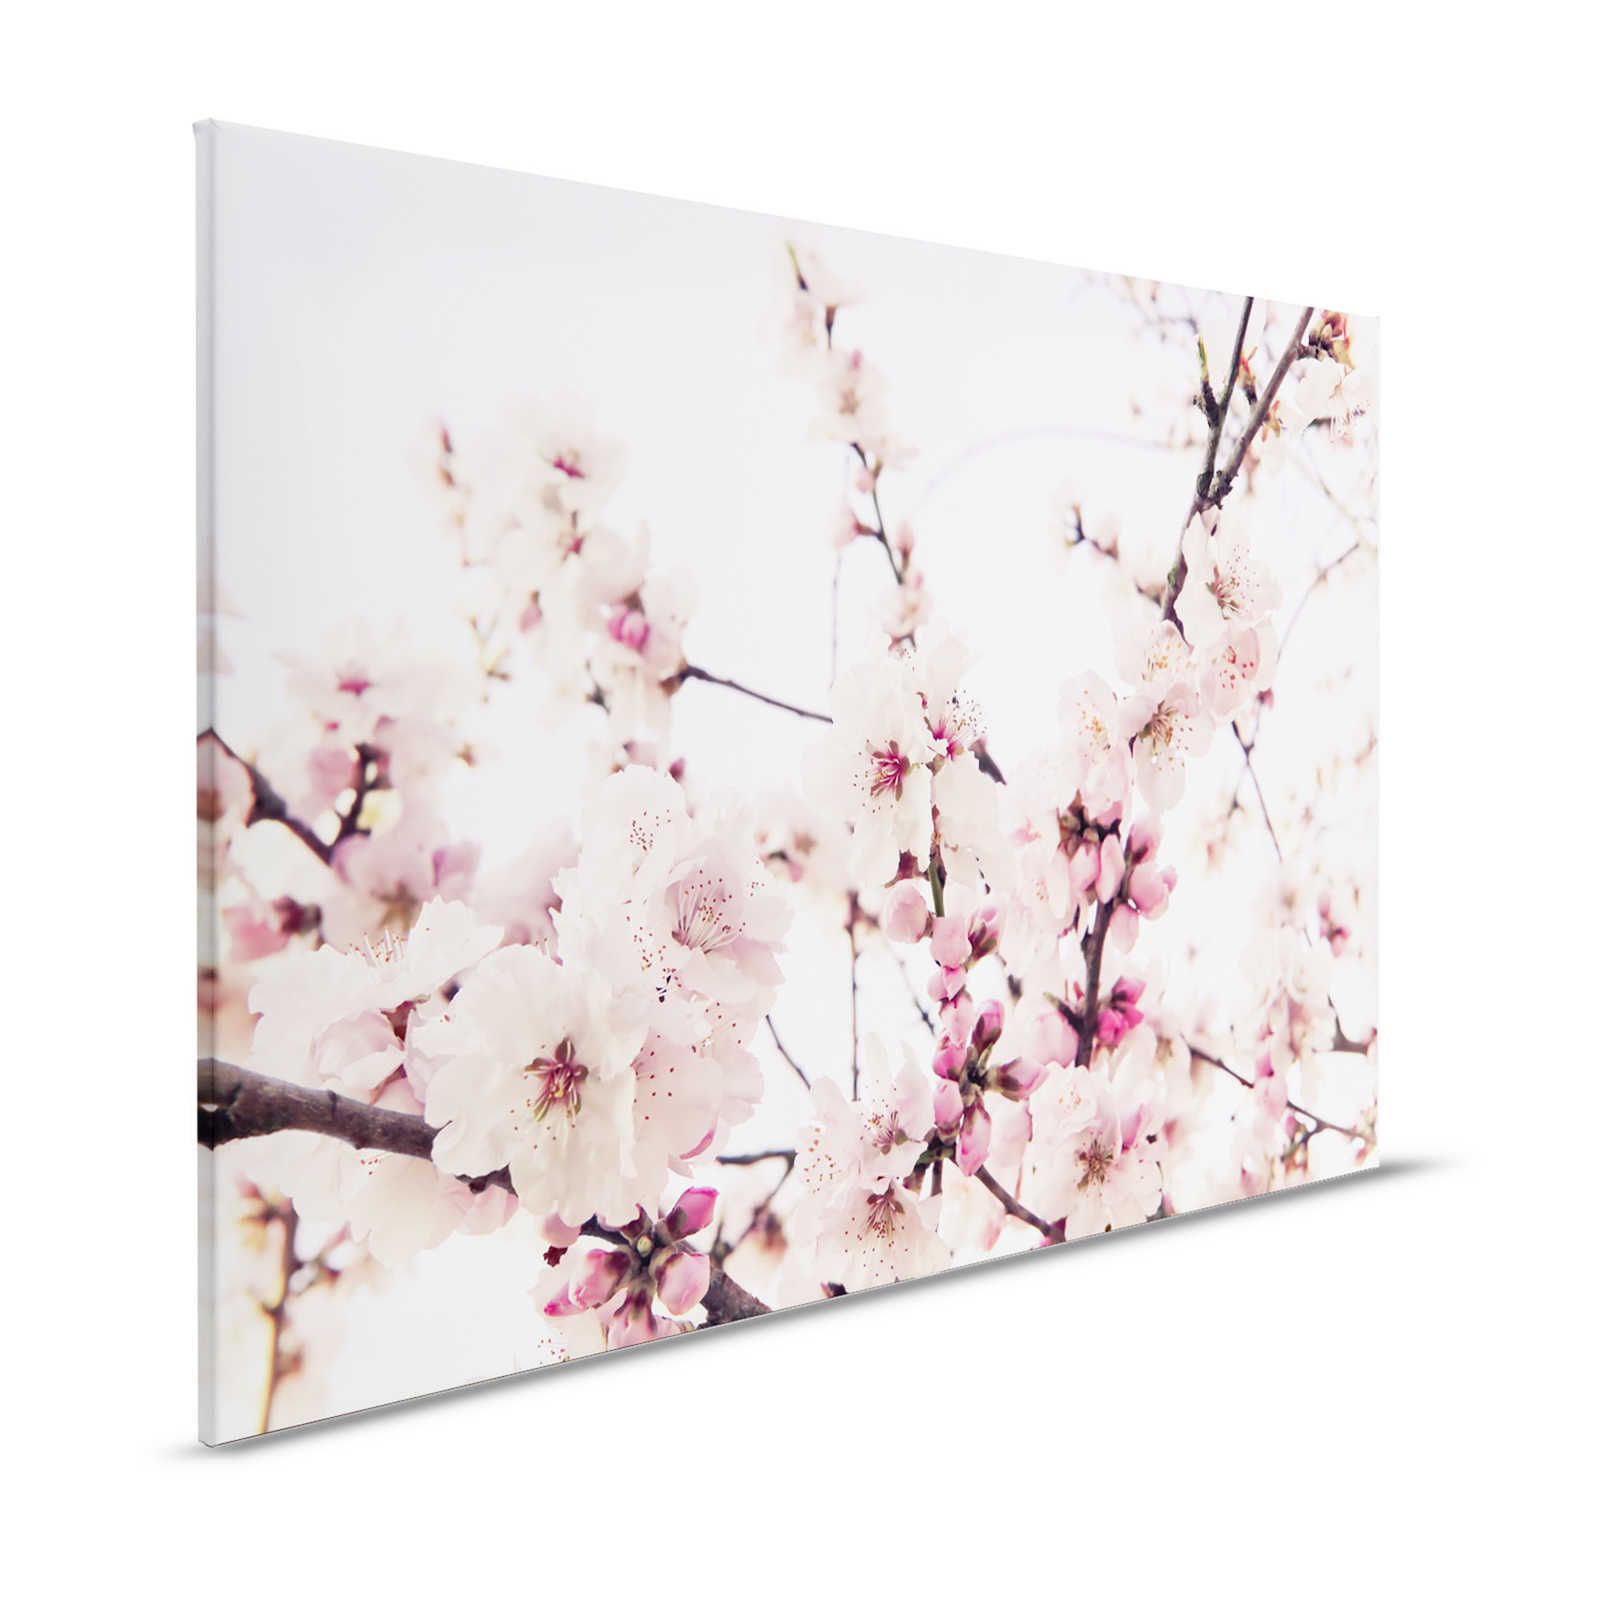 Naturel toile avec des fleurs de cerisier - 1,20 m x 0,80 m
